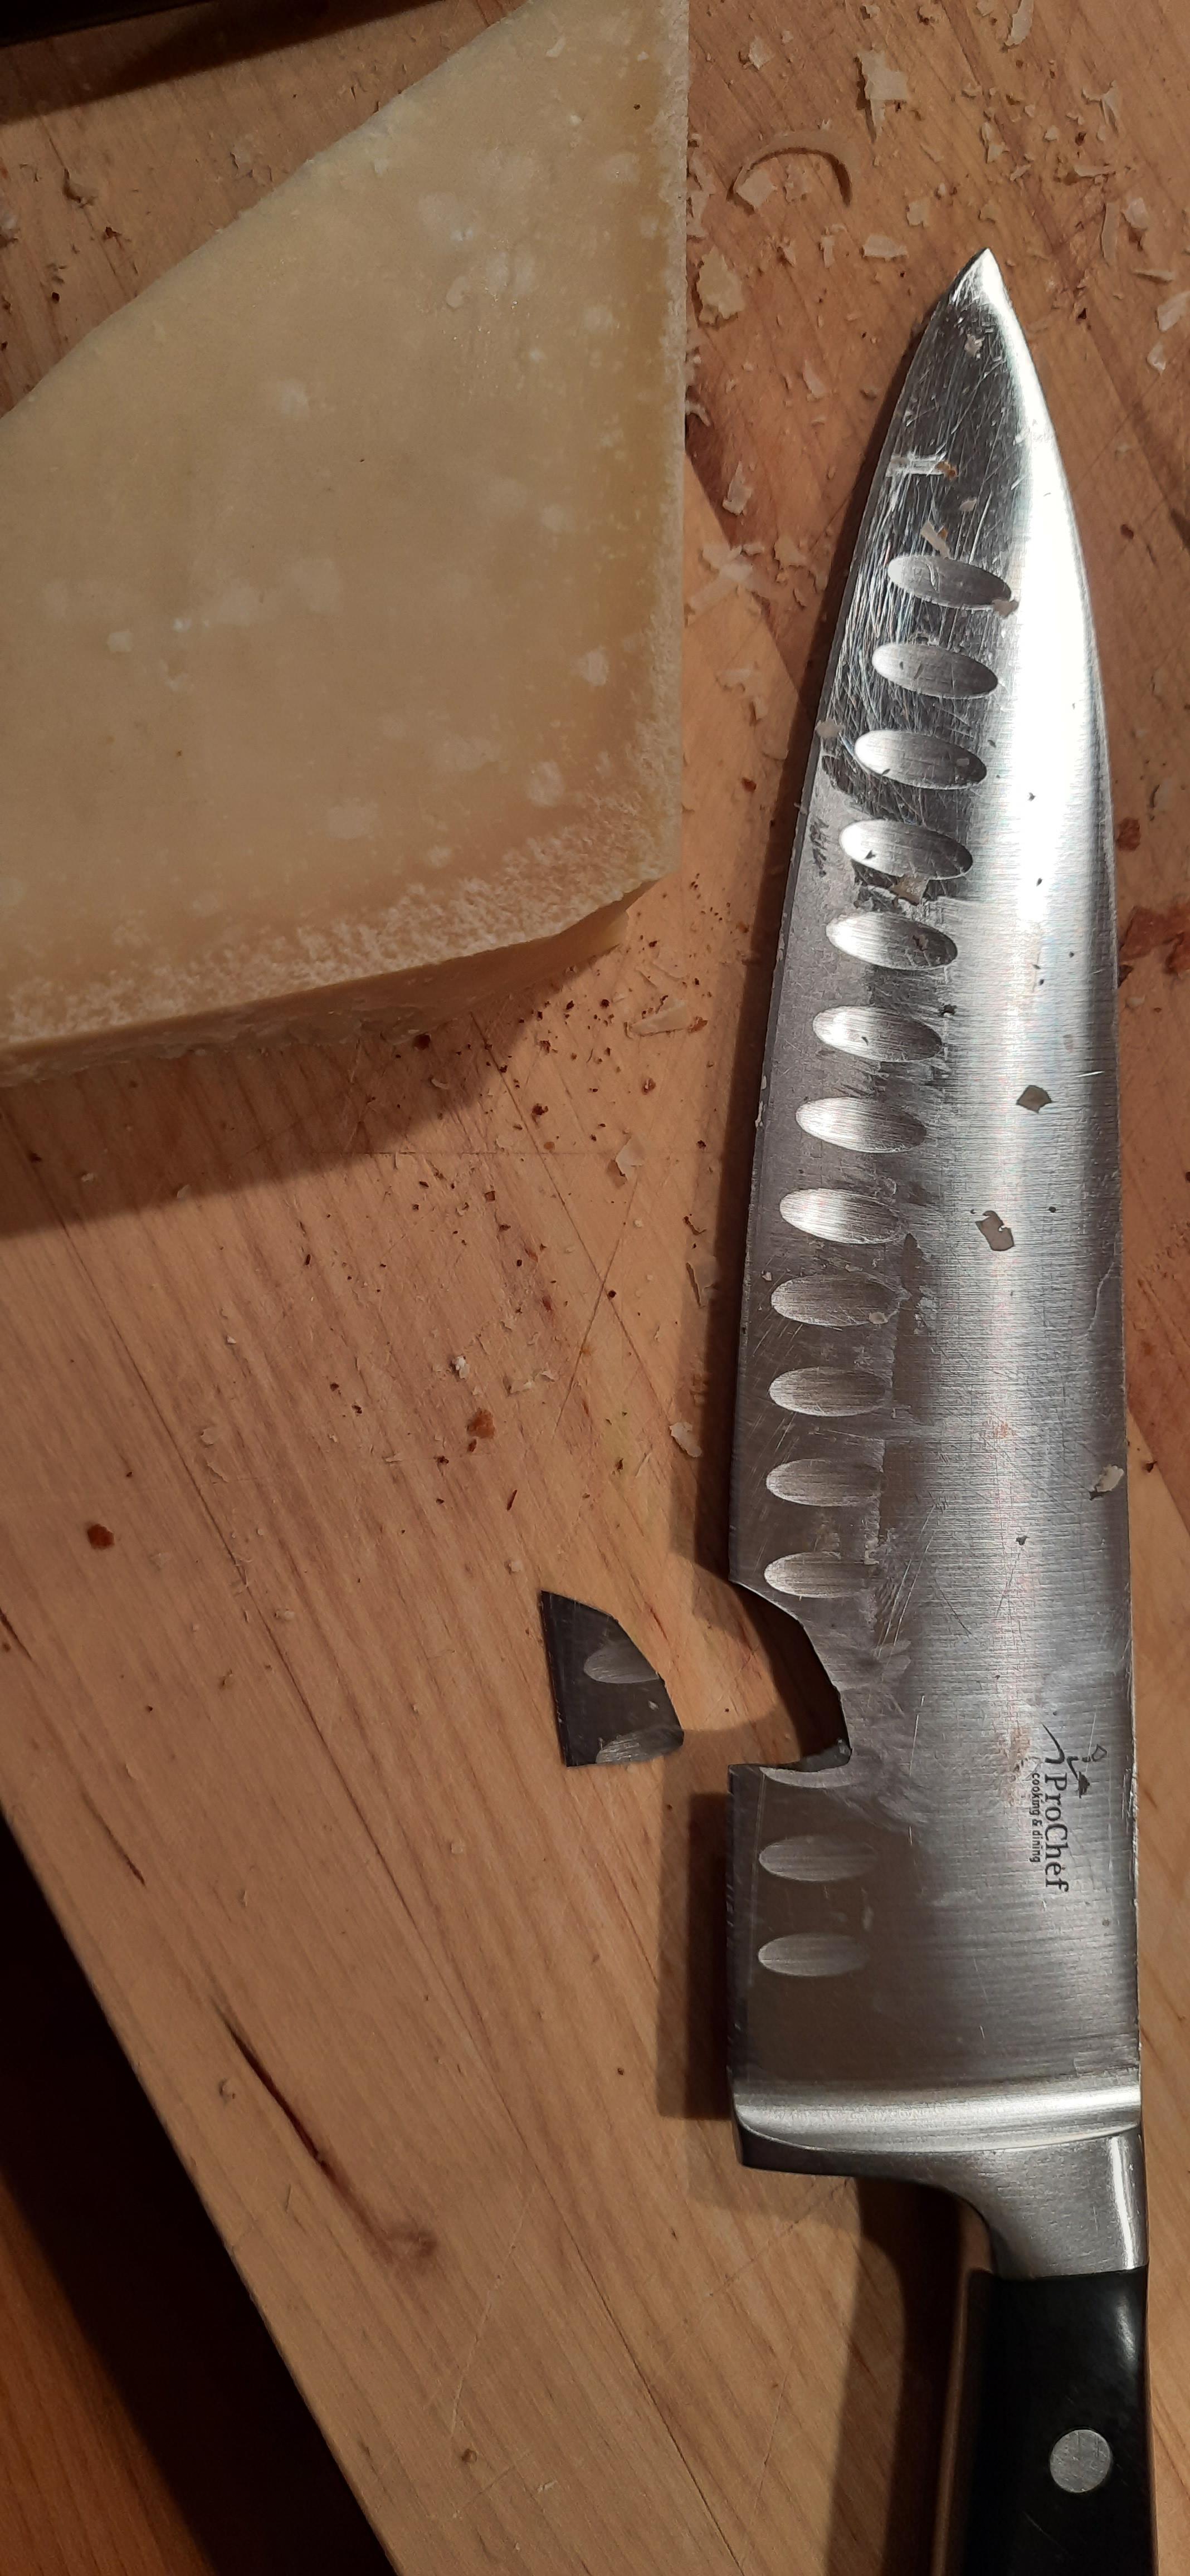 bad luck - Knife